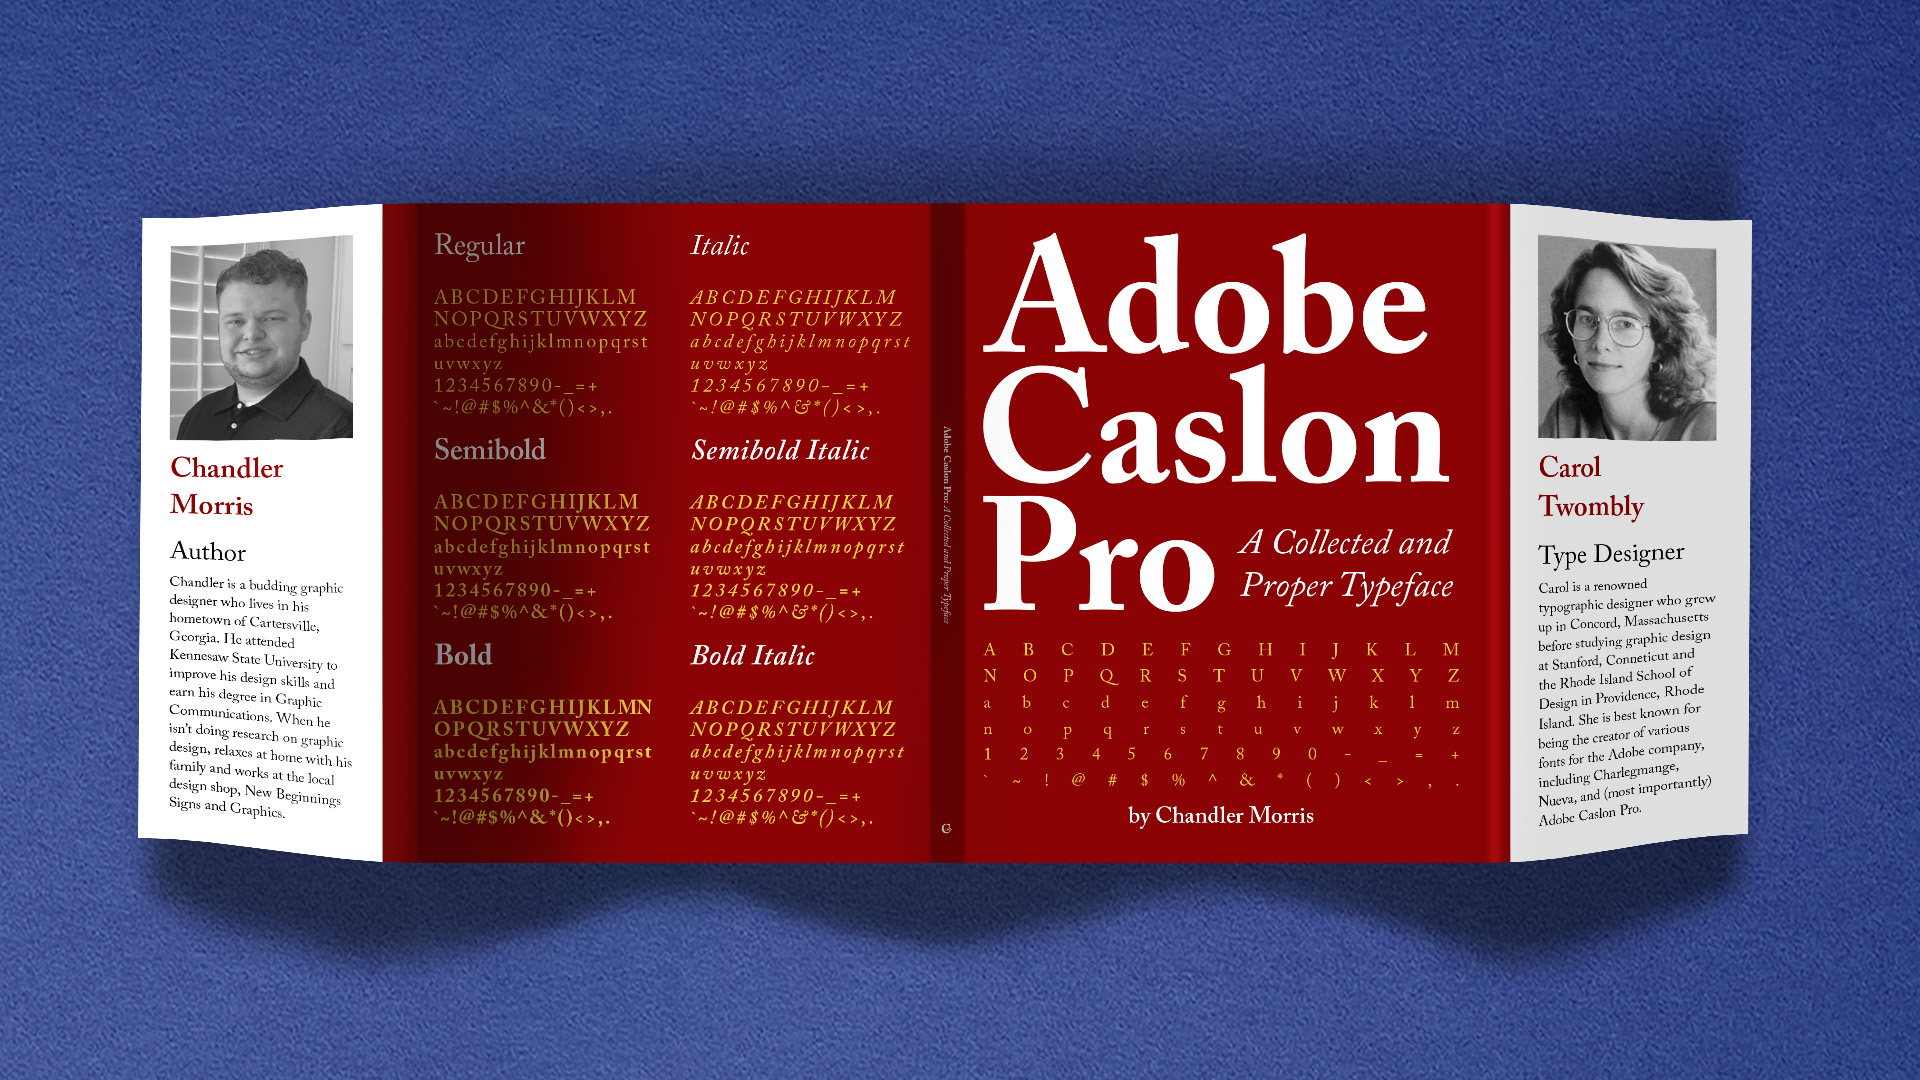 Adobe Caslon Pro Book Jacket / “Adobe Caslon Pro Book Jacket,” type specimen book jacket, 11.25 x 27.5 inches print book jacket, 2021. This book jacket displays the sophisticated style of the Adobe Caslon Pro typeface.